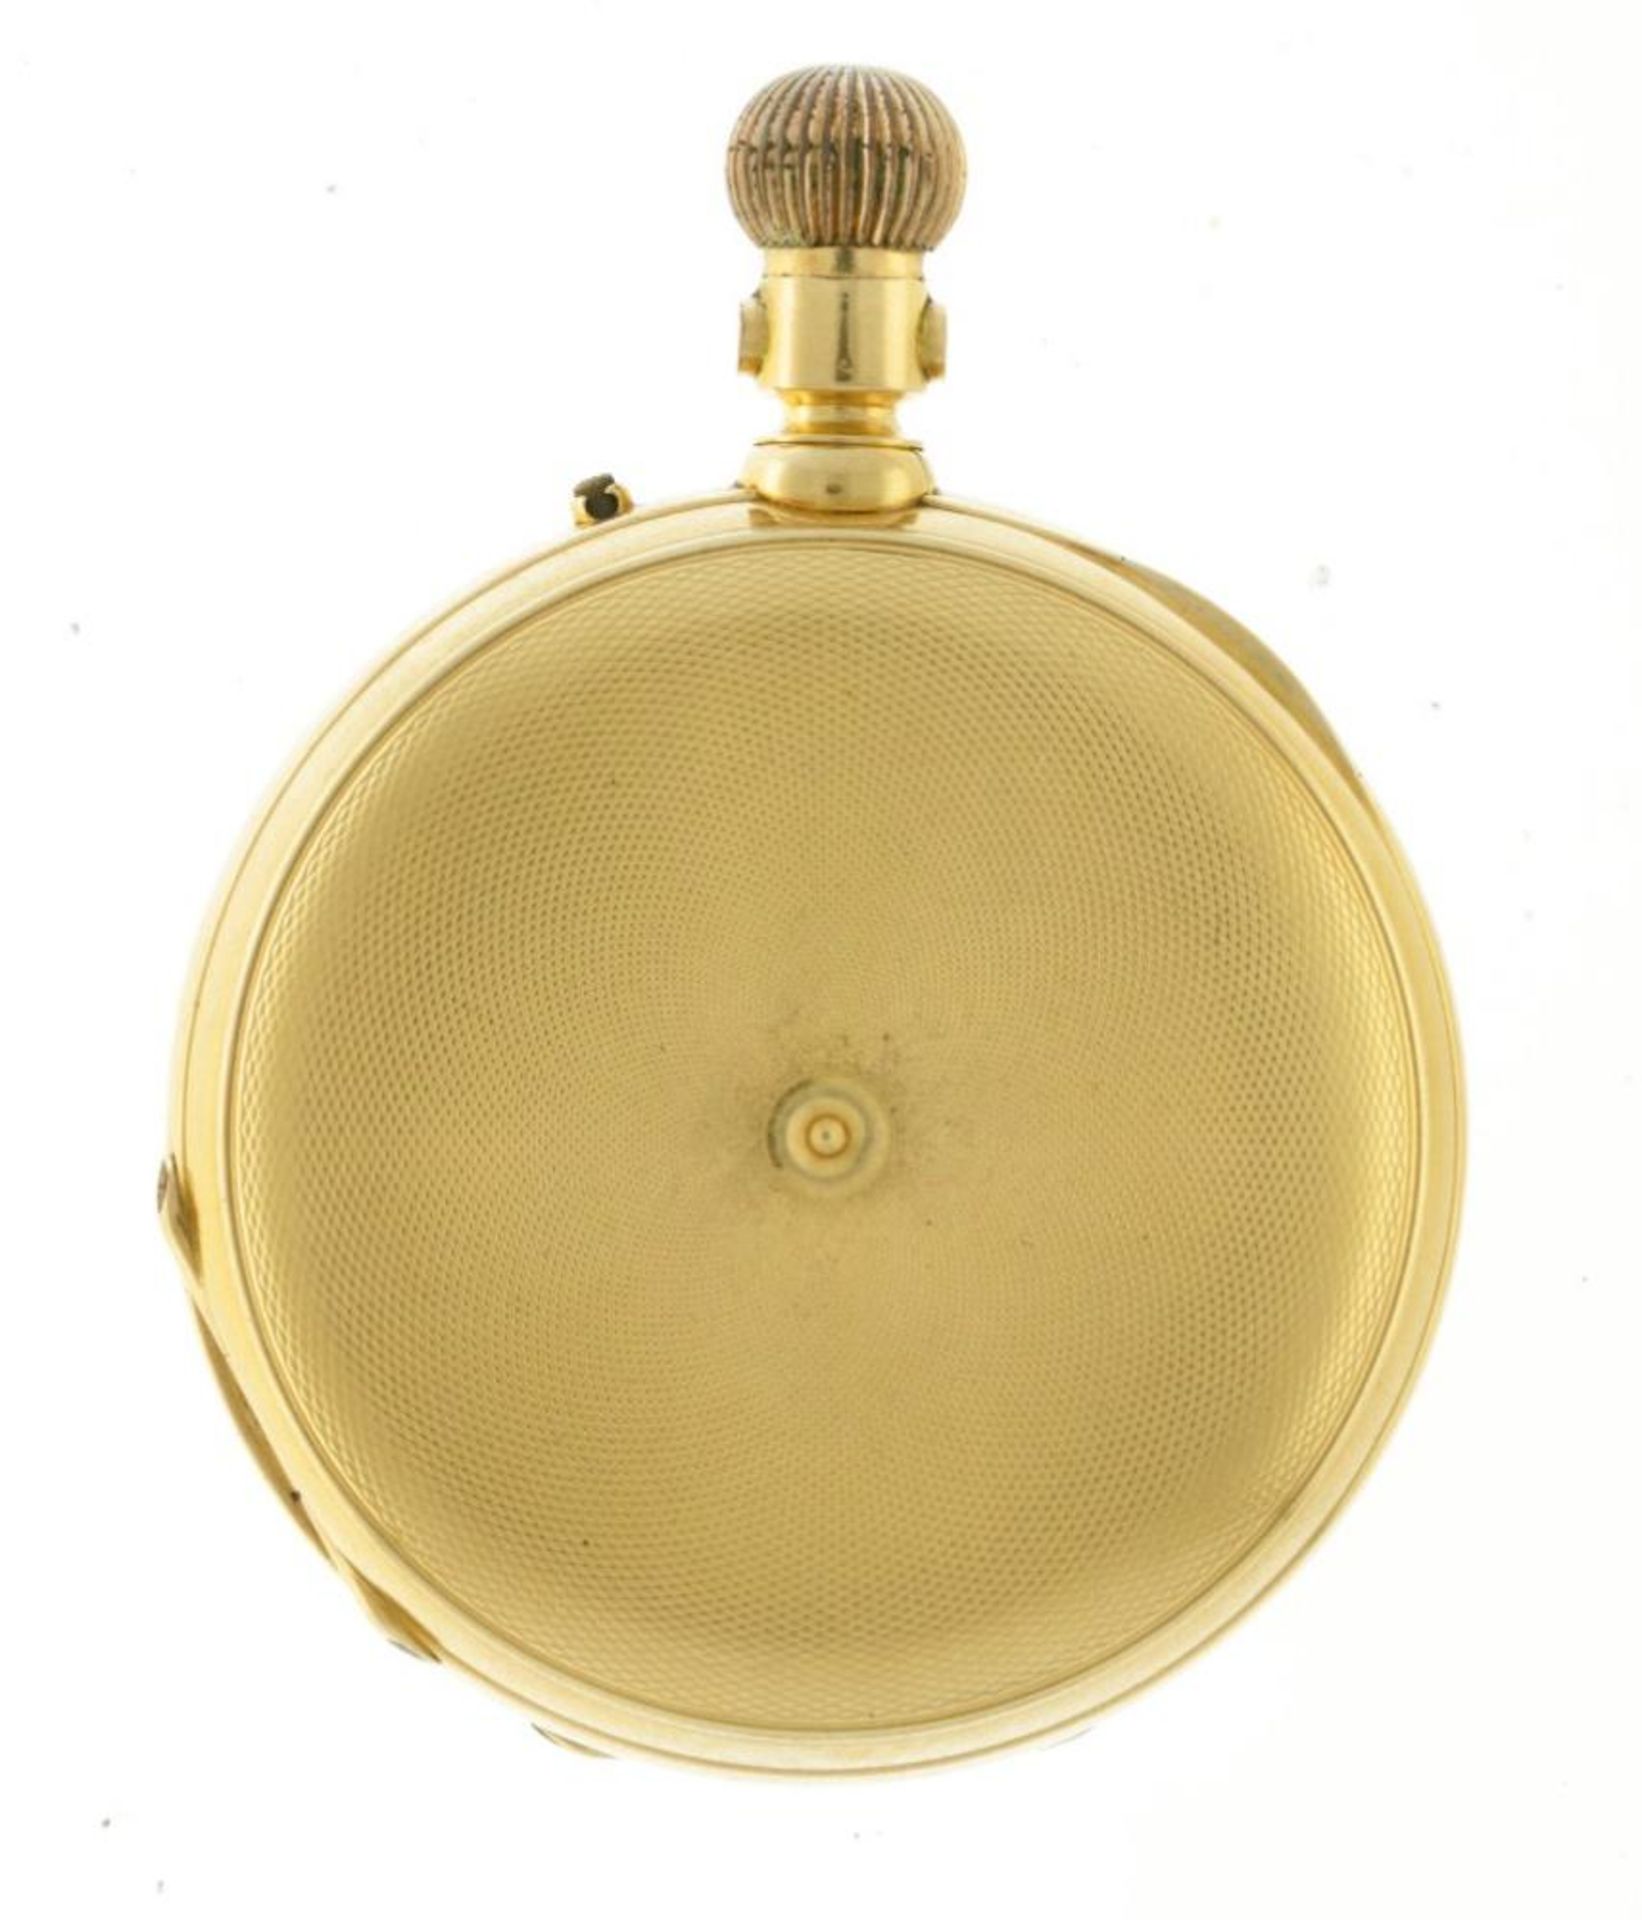 Brevete - Men's savonette pocket watch - appr. 1876. - Bild 3 aus 6